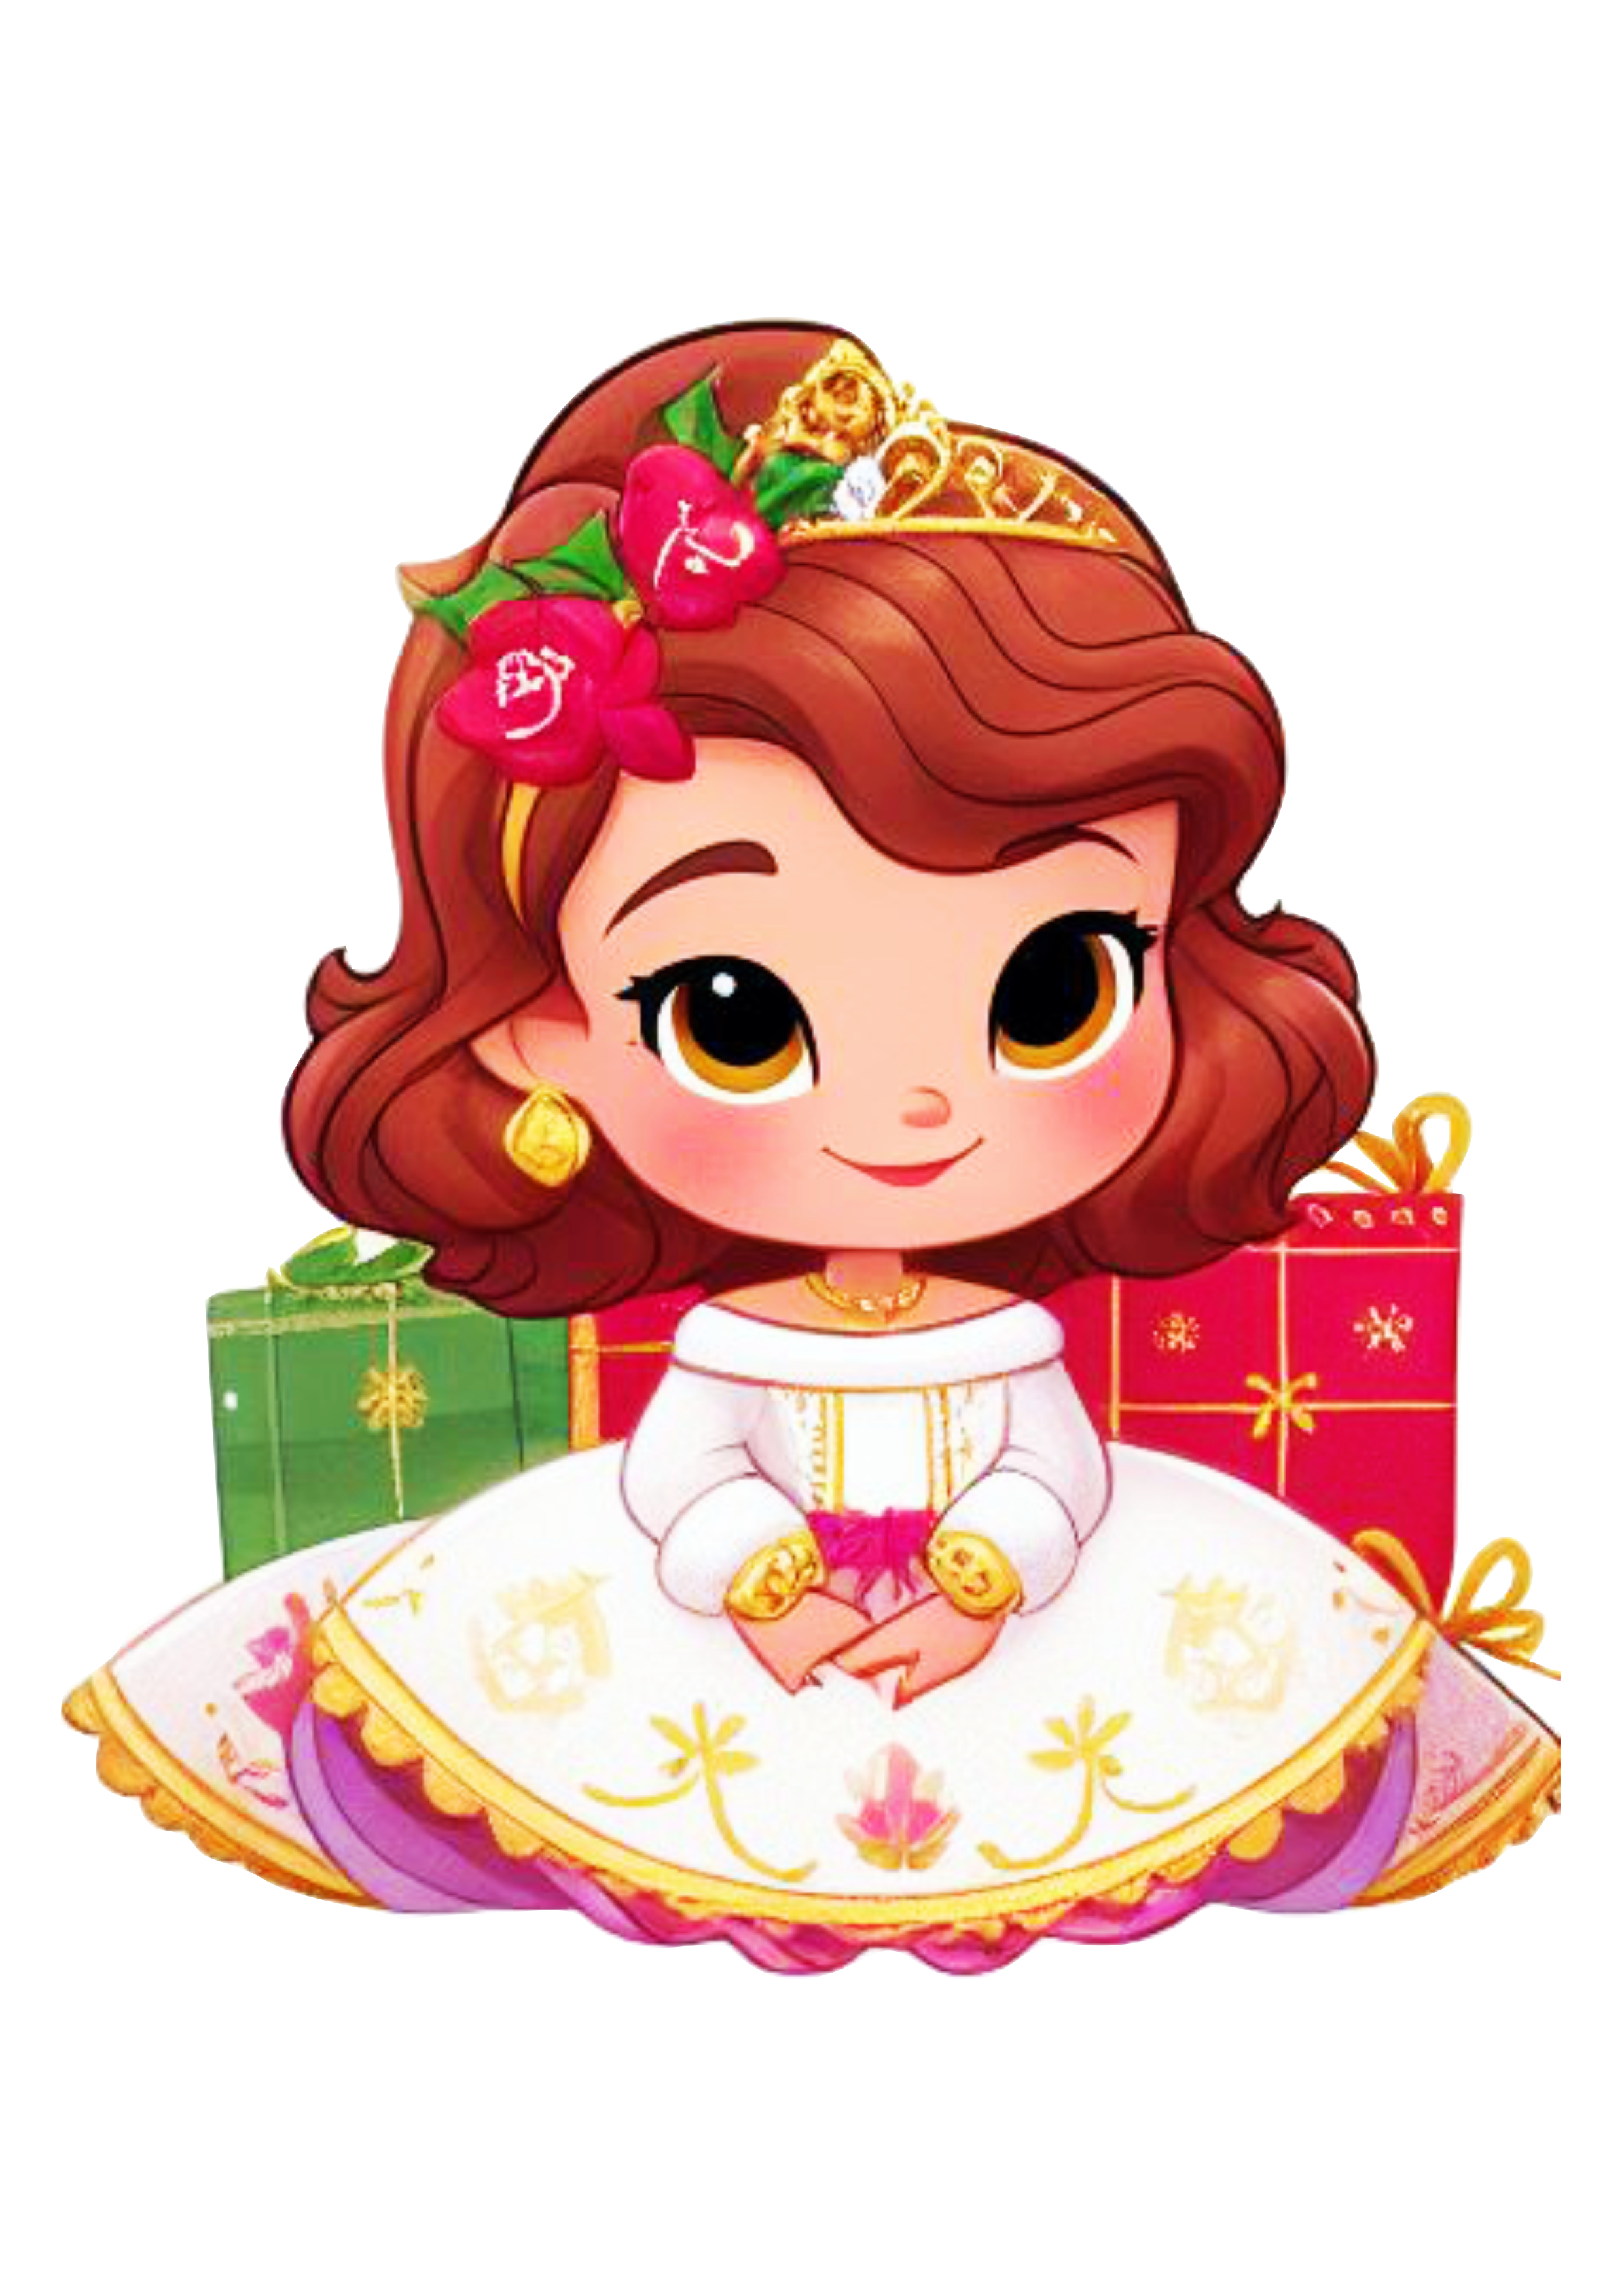 Princesa com roupinha de natal menina desenho ilustração vestido branco com rosa png